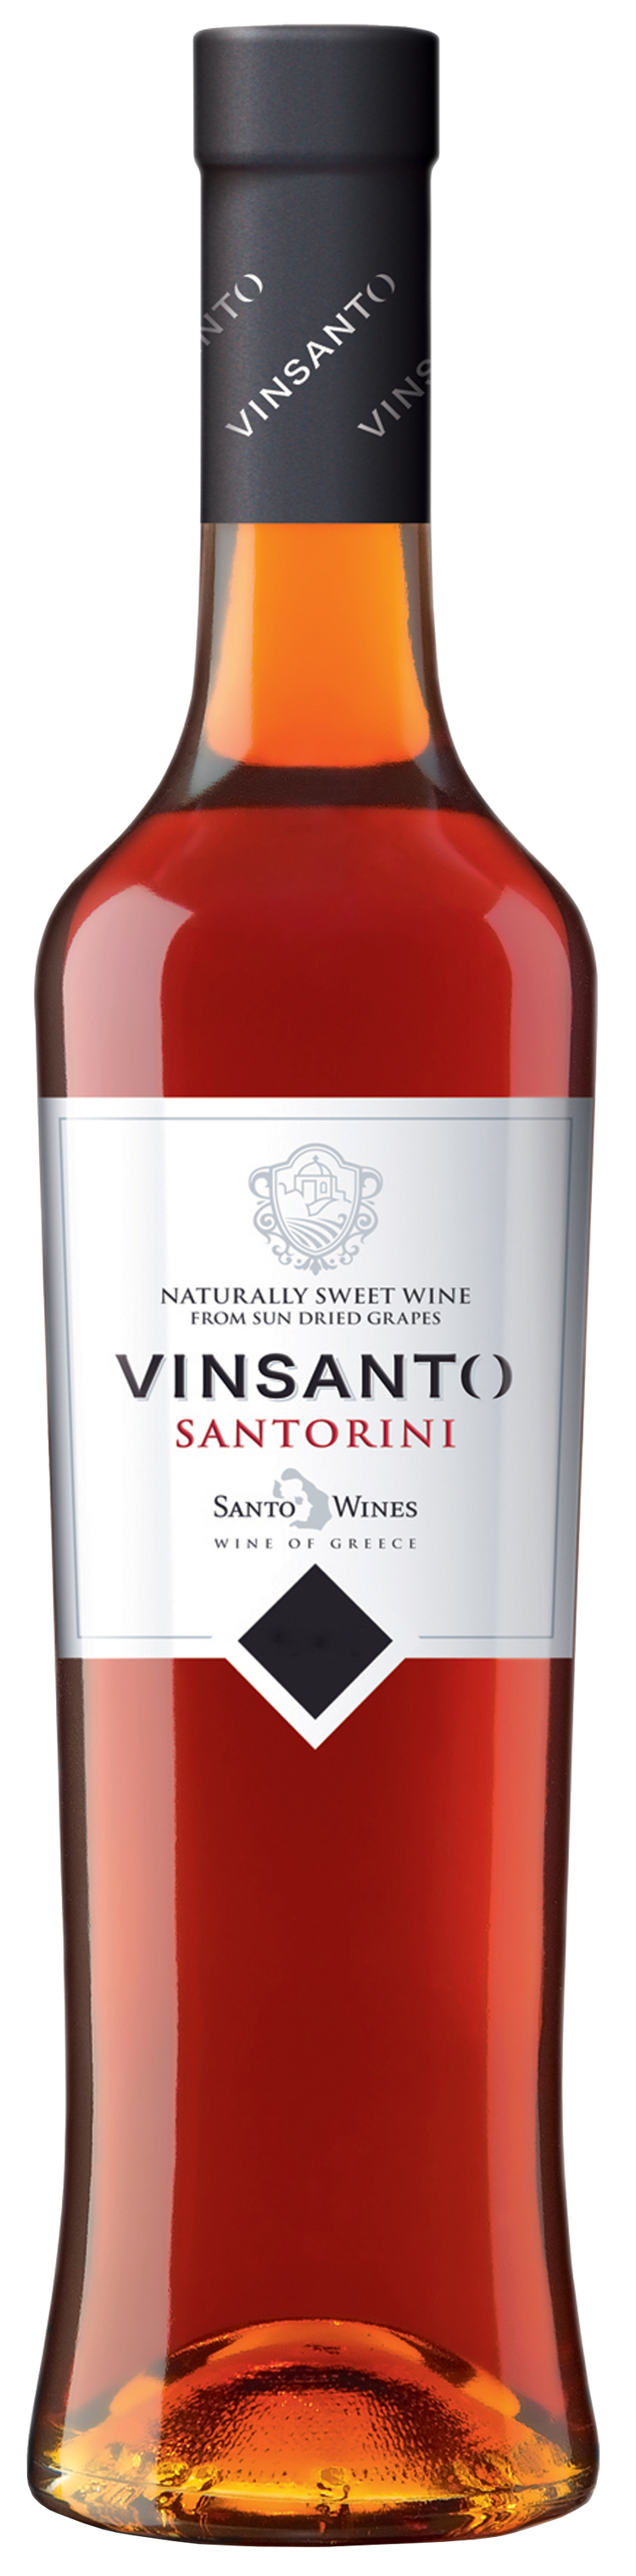 サント・ワインズ  サントリーニ・ヴィンサント 2010 SANTO WINES  SANTORINI VINSANTO